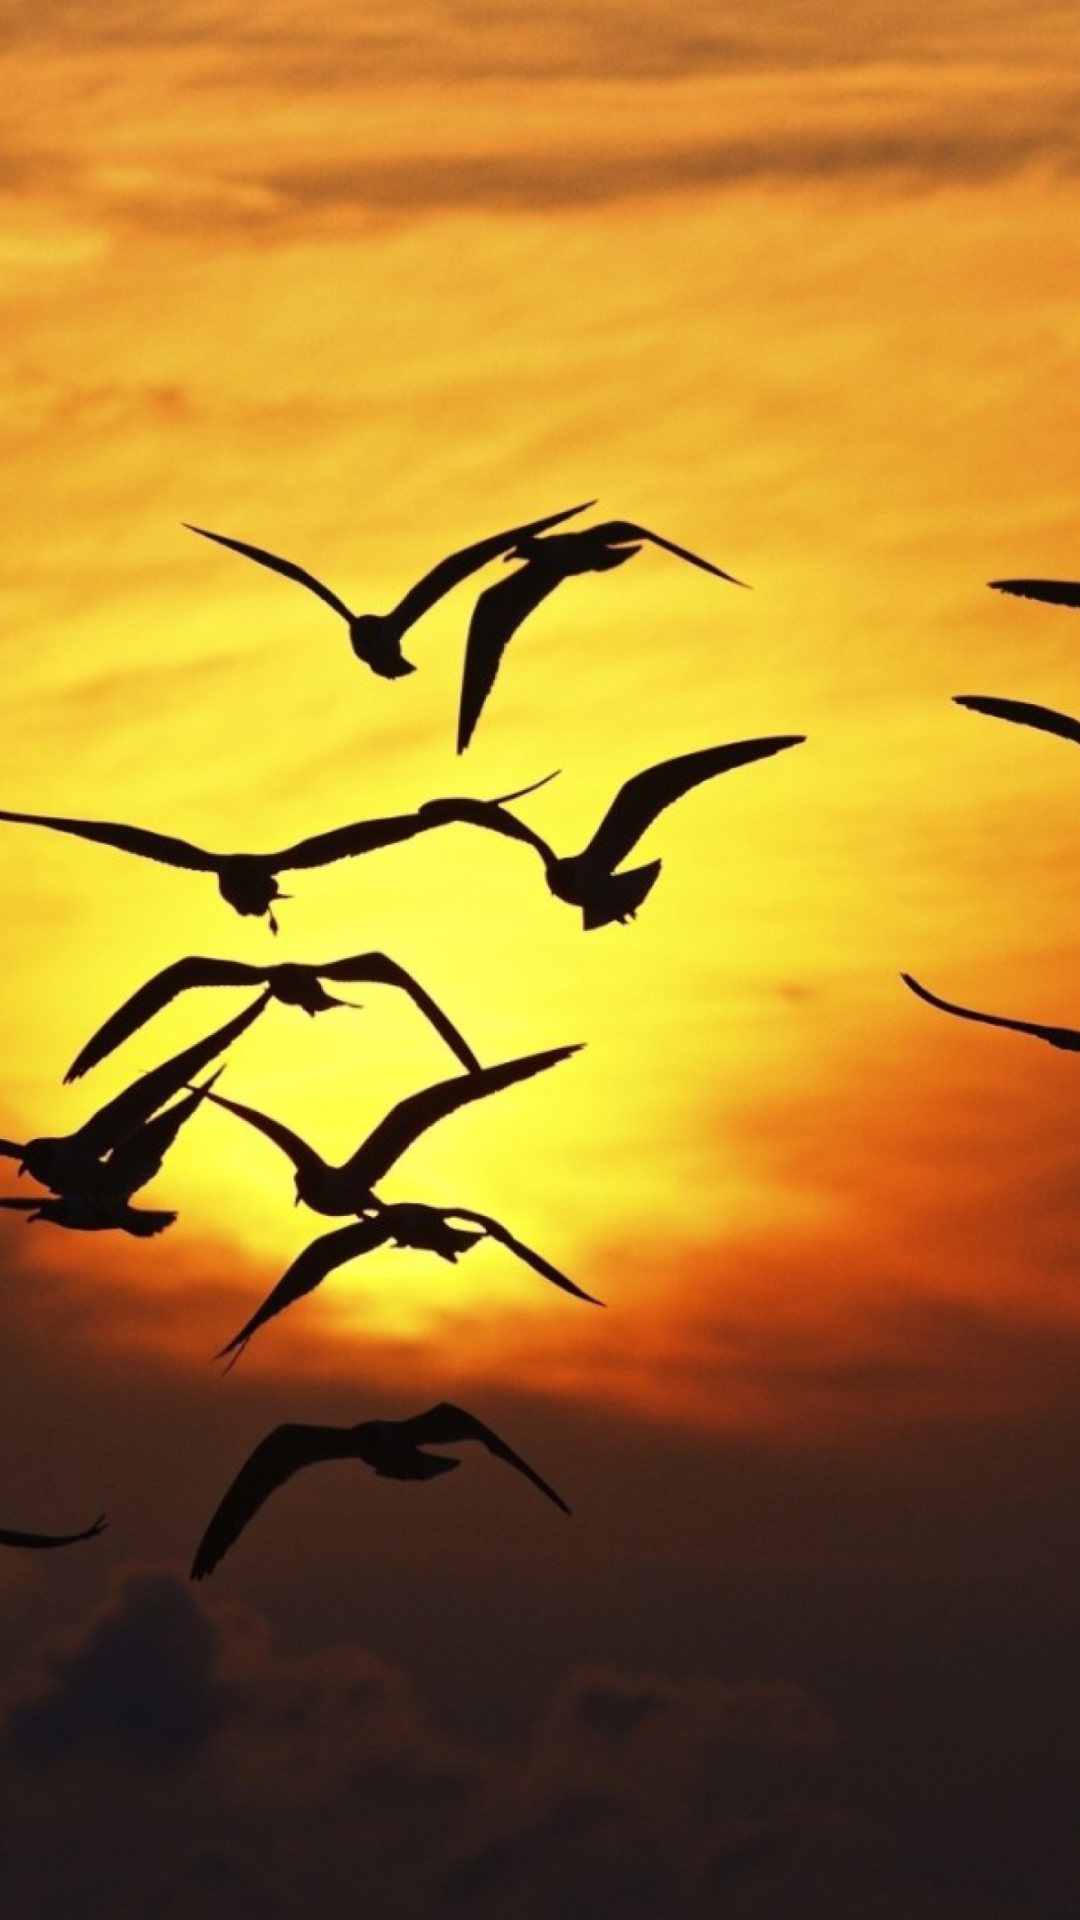 Sunset Birds wallpaper 1080x1920